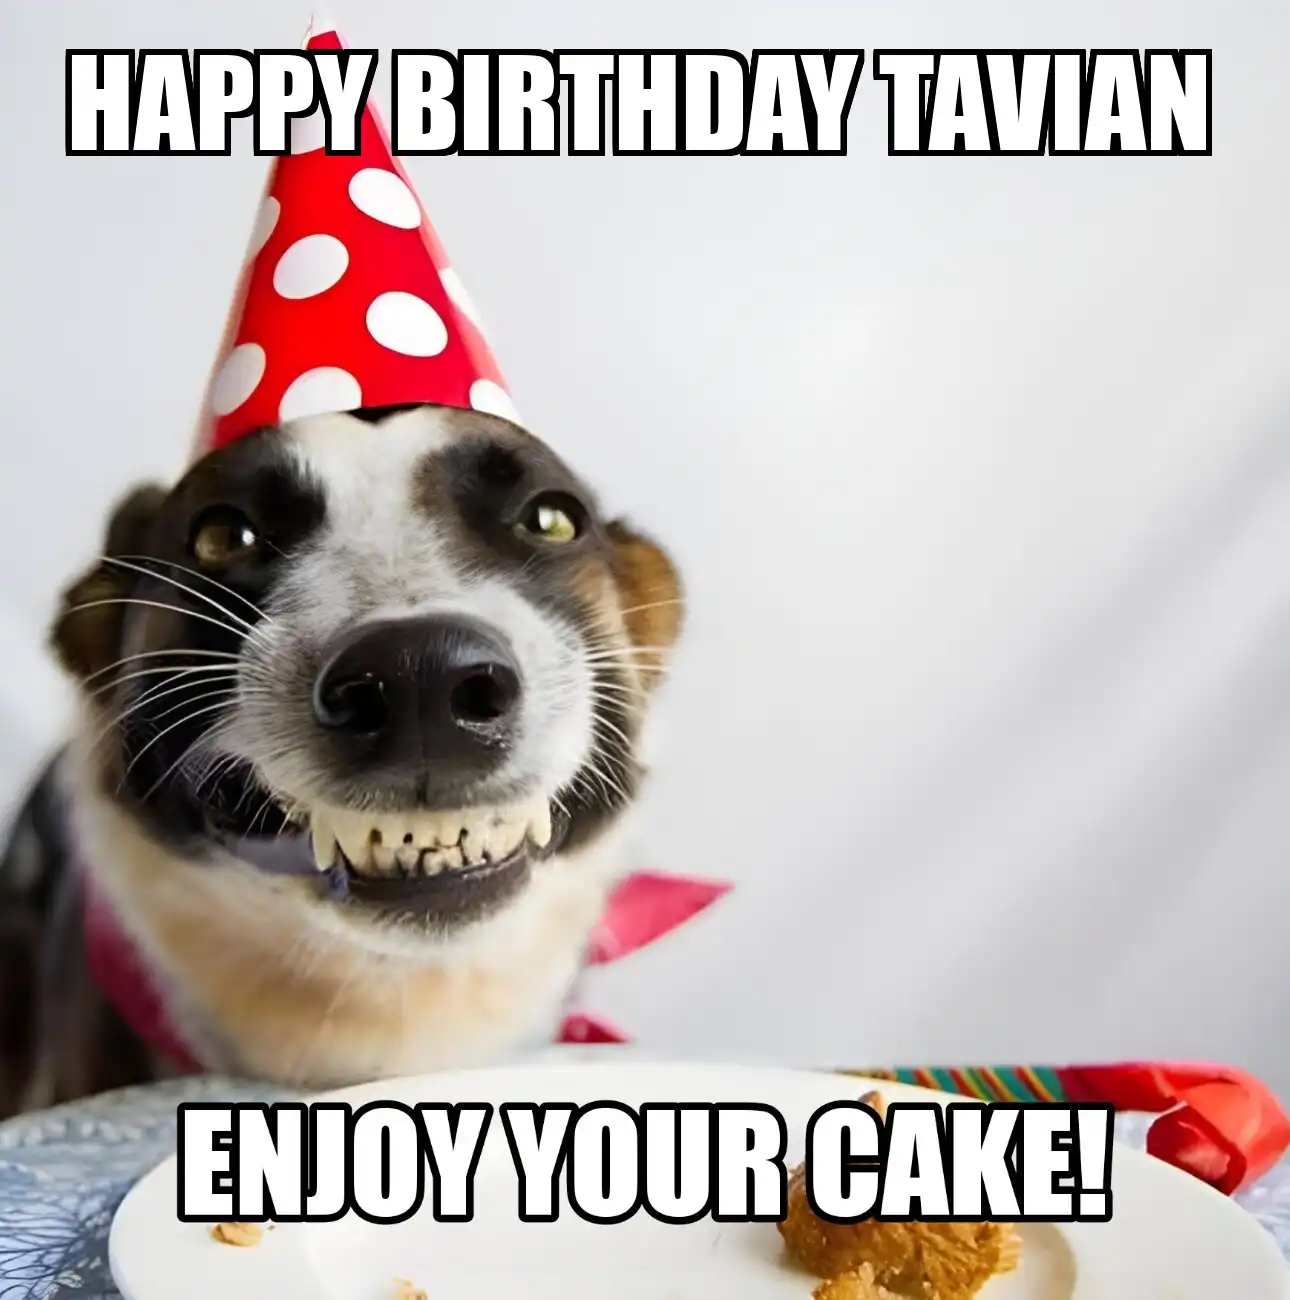 Happy Birthday Tavian Enjoy Your Cake Dog Meme